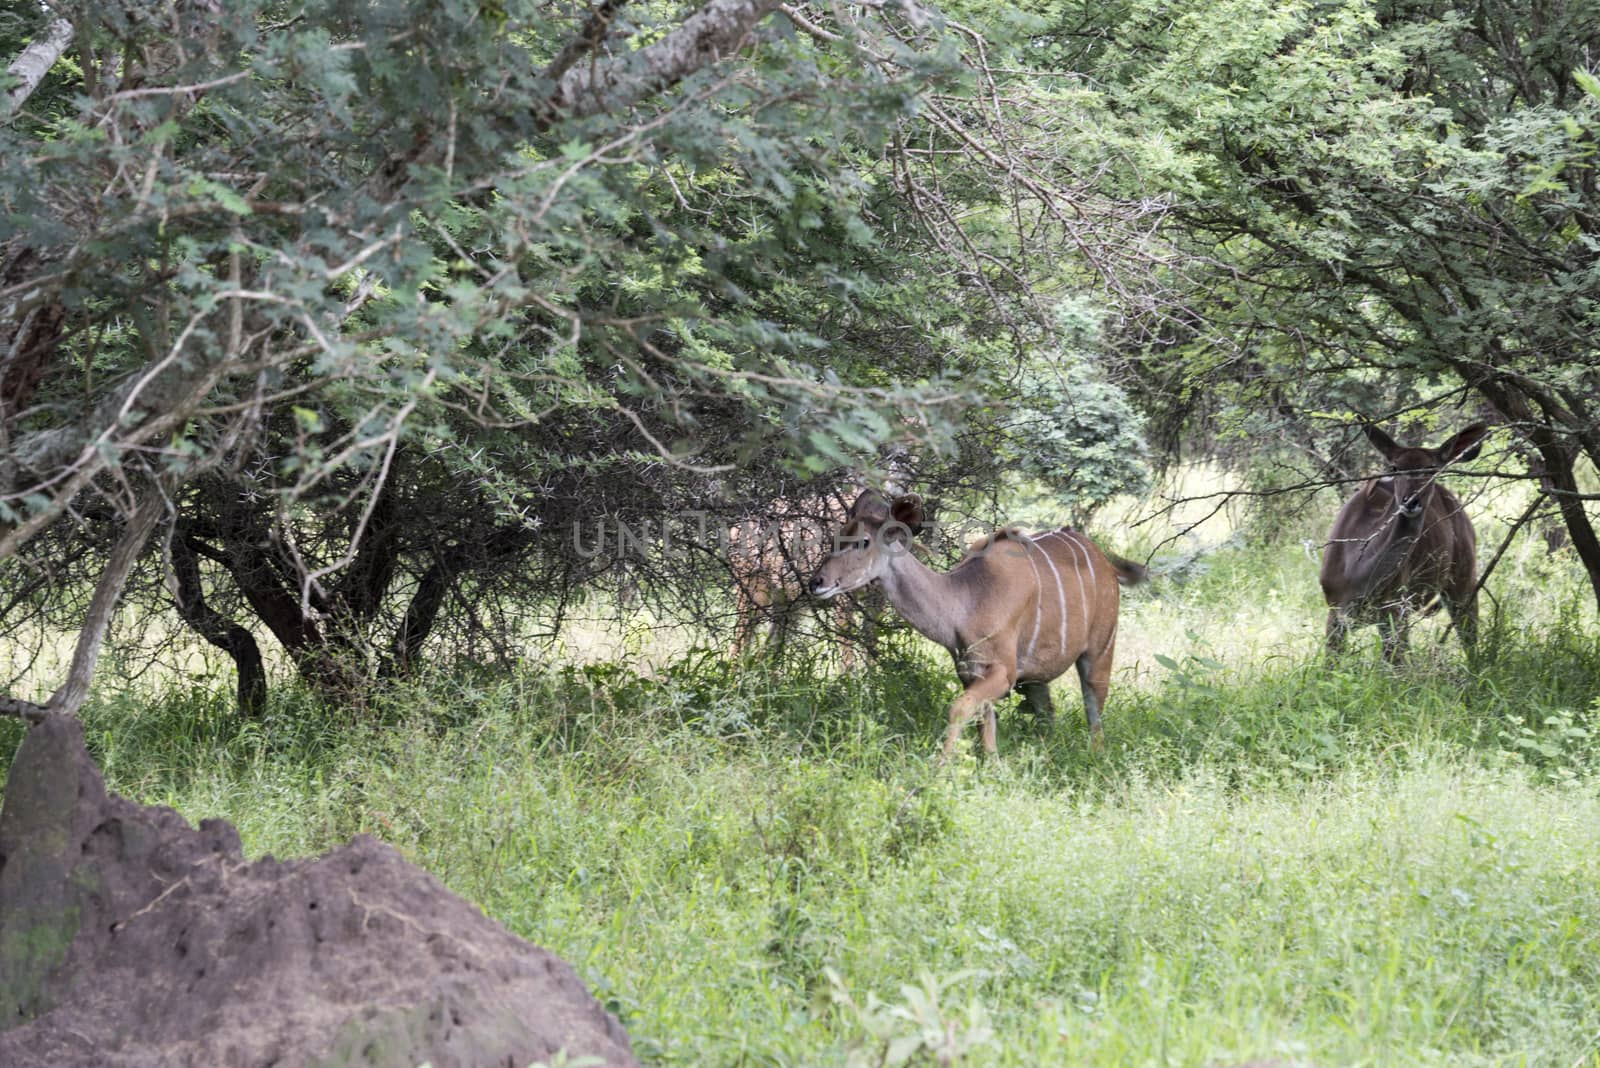 africa nyala on safari by compuinfoto